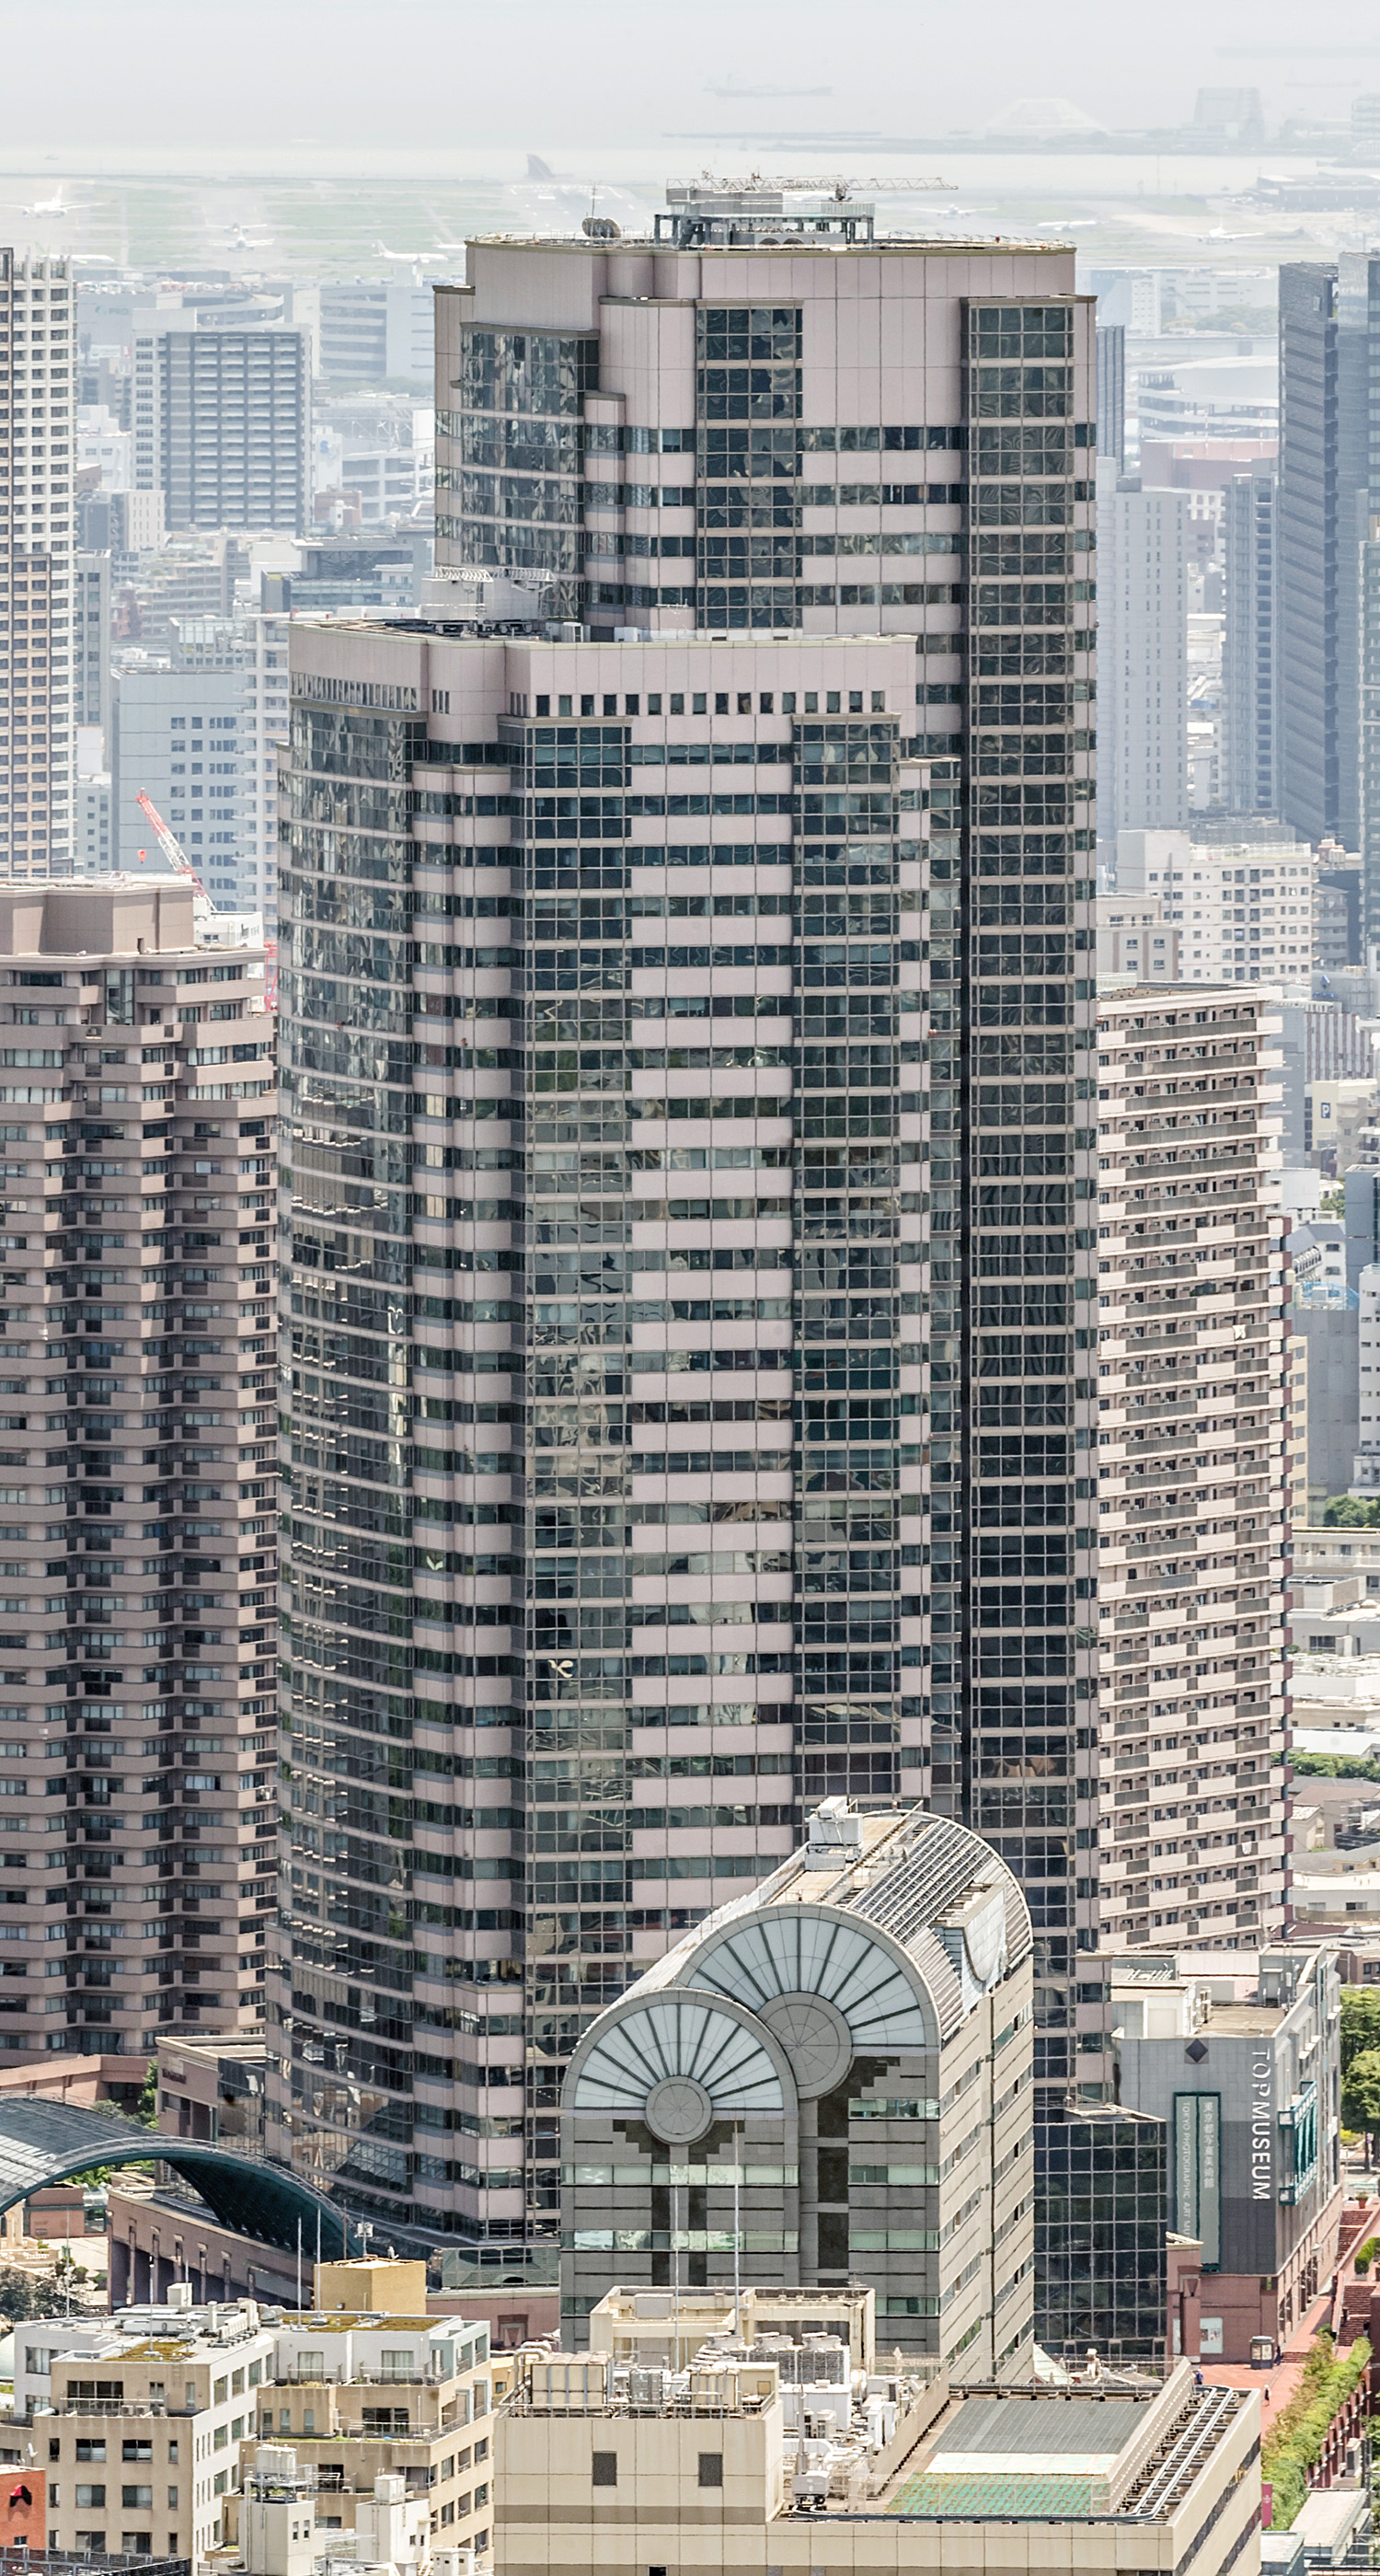 Yebisu Garden Place Tower, Tokyo - View from Shibuya Scramble Square. © Mathias Beinling